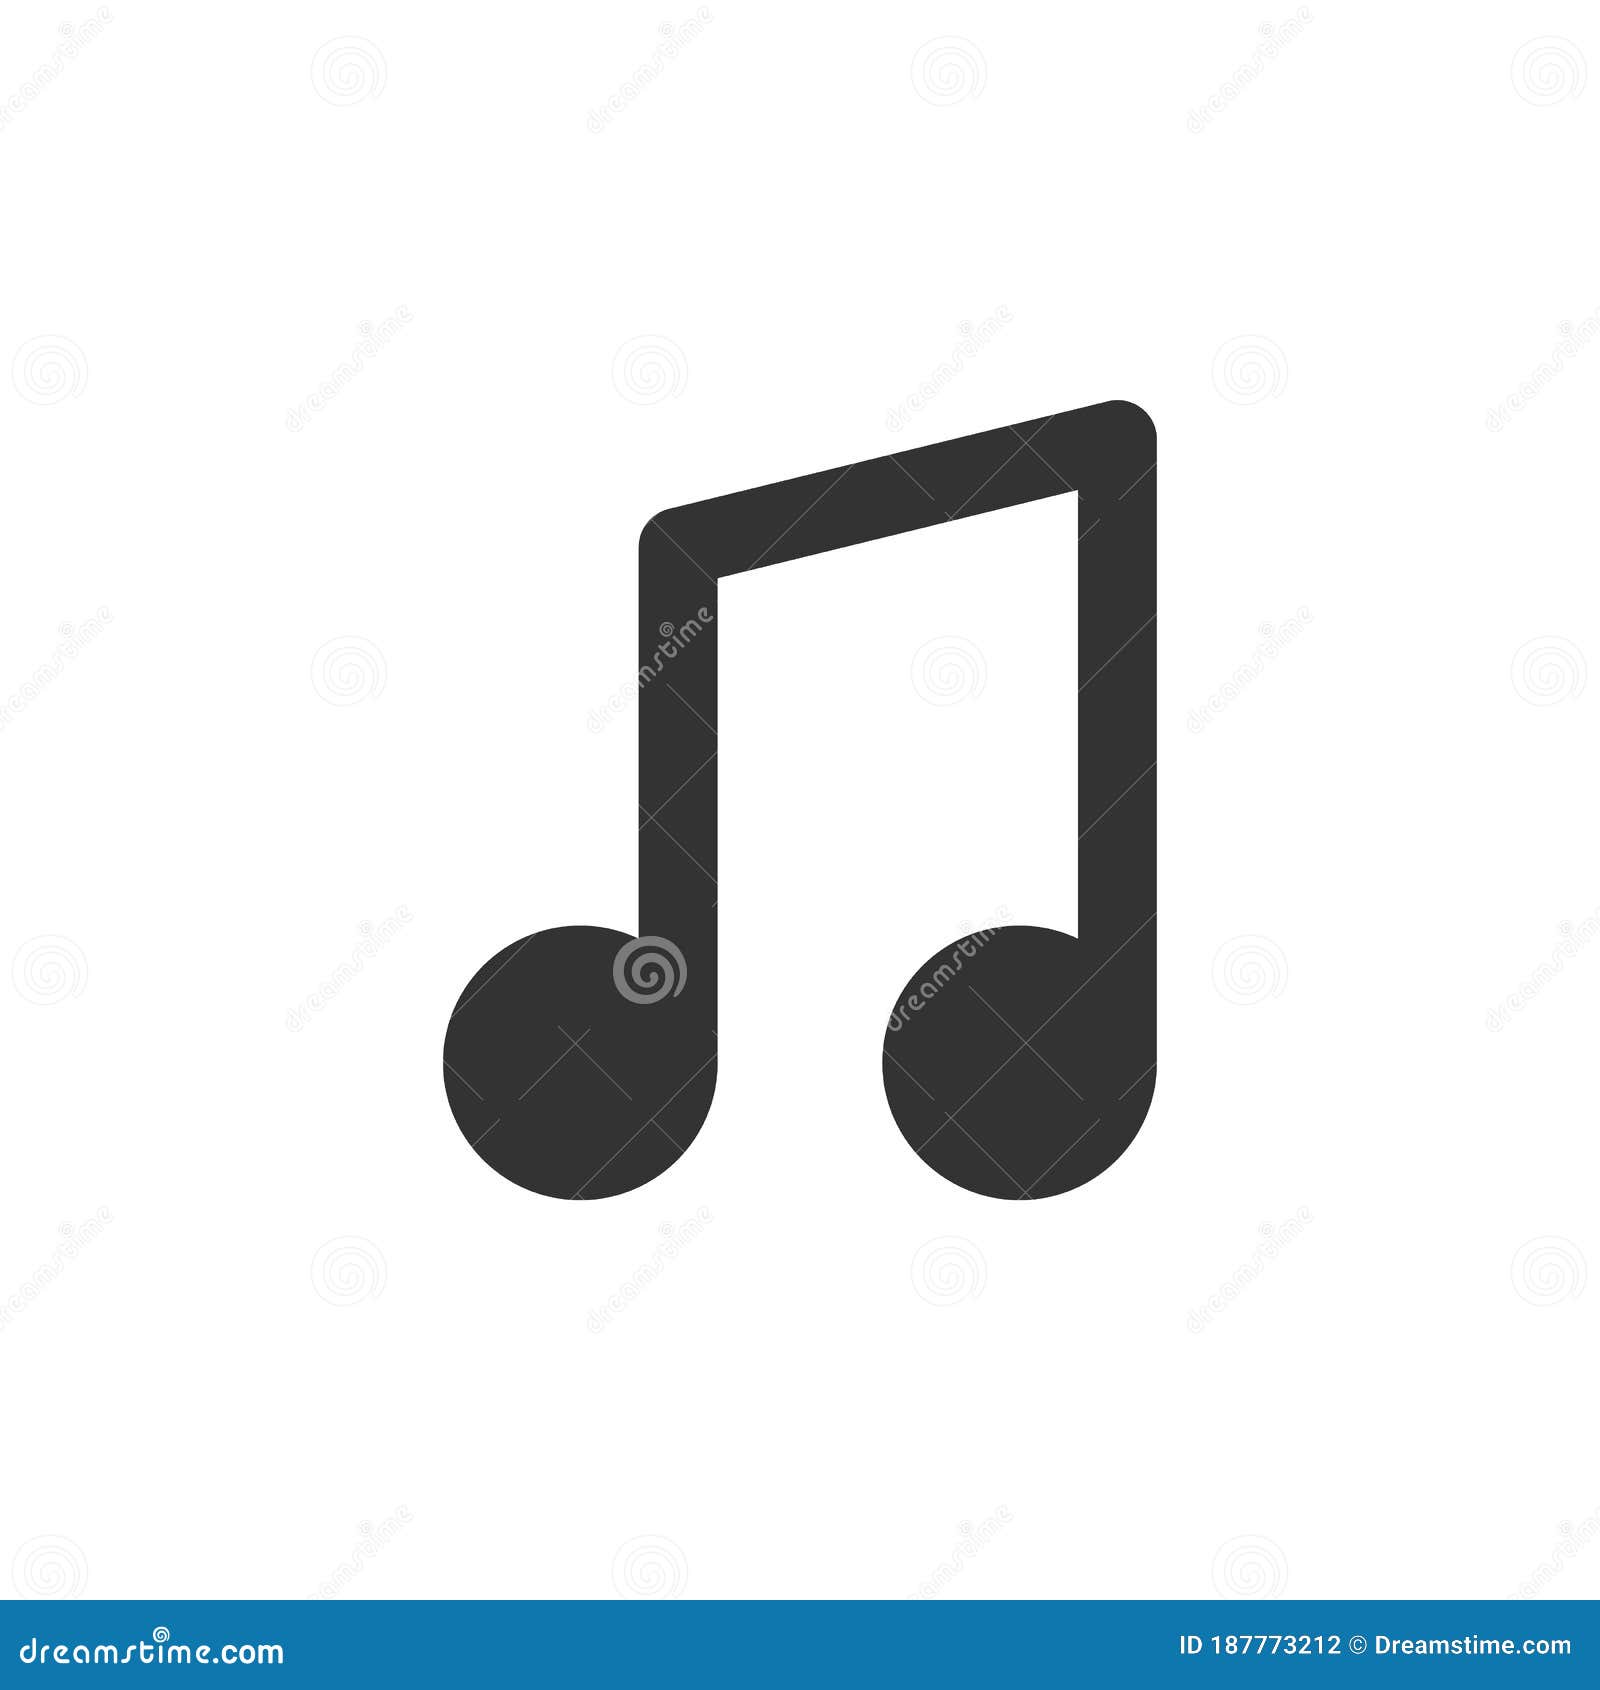 quaver note  simple icon